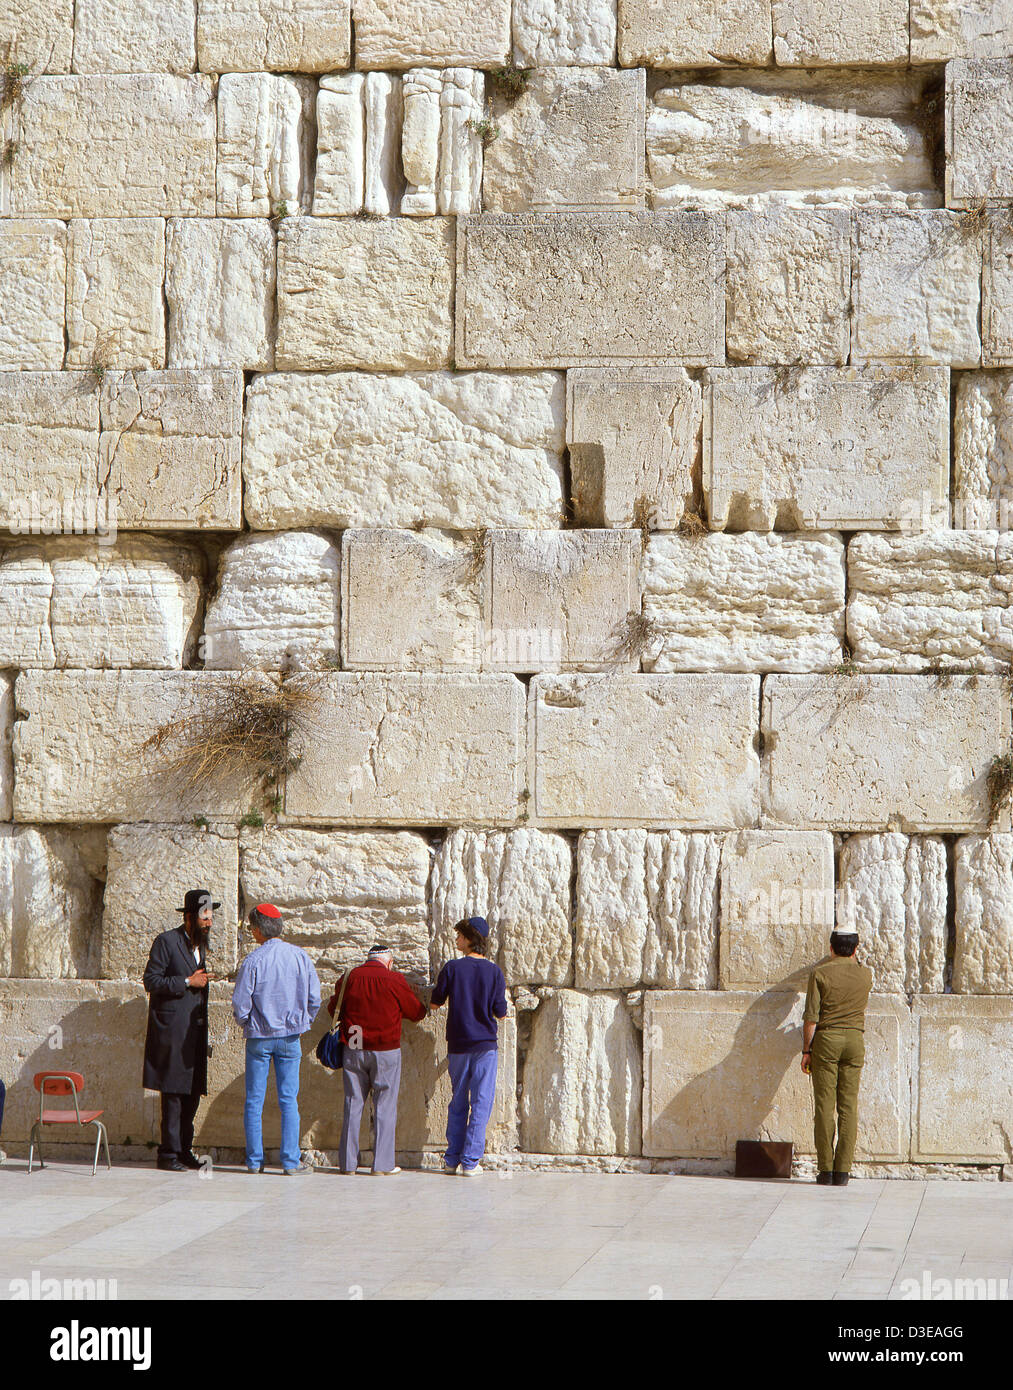 Le Mur occidental, vieille ville, Jérusalem, district de Jérusalem, Israël Banque D'Images